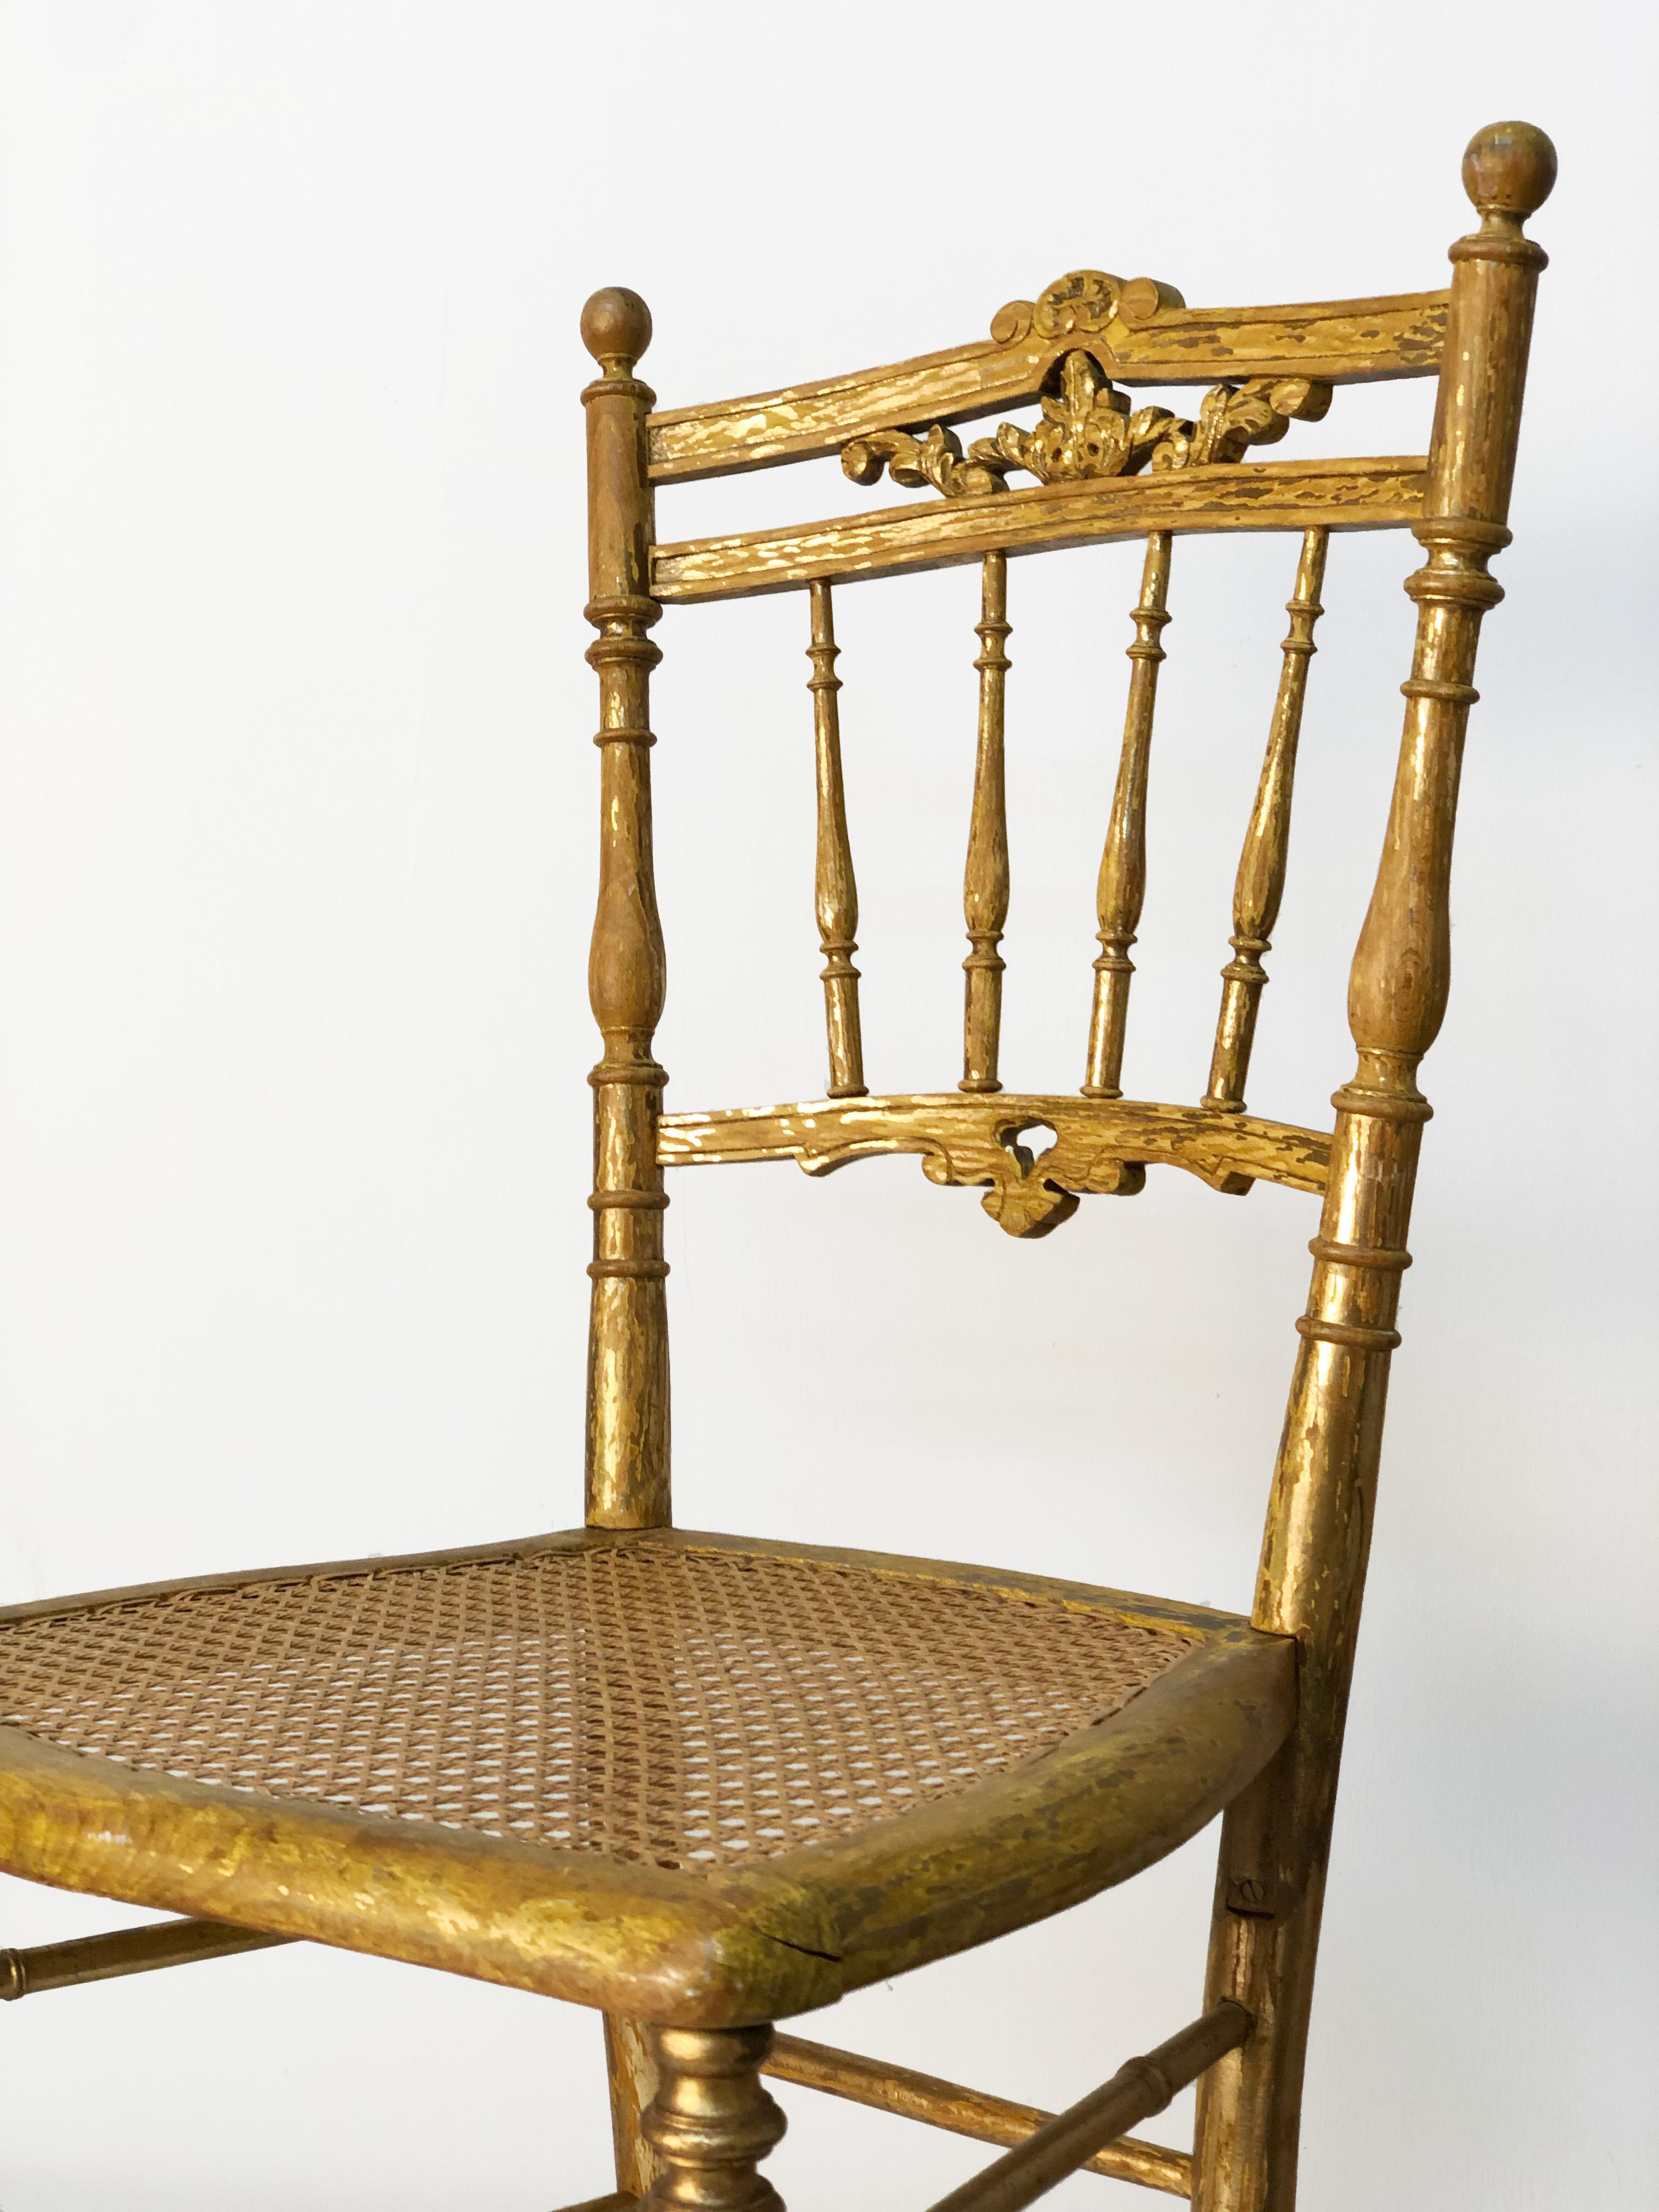 Nous vous proposons une paire de chaises Chiavari Empire dorées du 17ème siècle. Bois dur de saule doré avec siège en rotin tressé. Ornementation sculptée à la main sur la traverse supérieure. Pieds, broches et traverses lattées. Importantes pertes